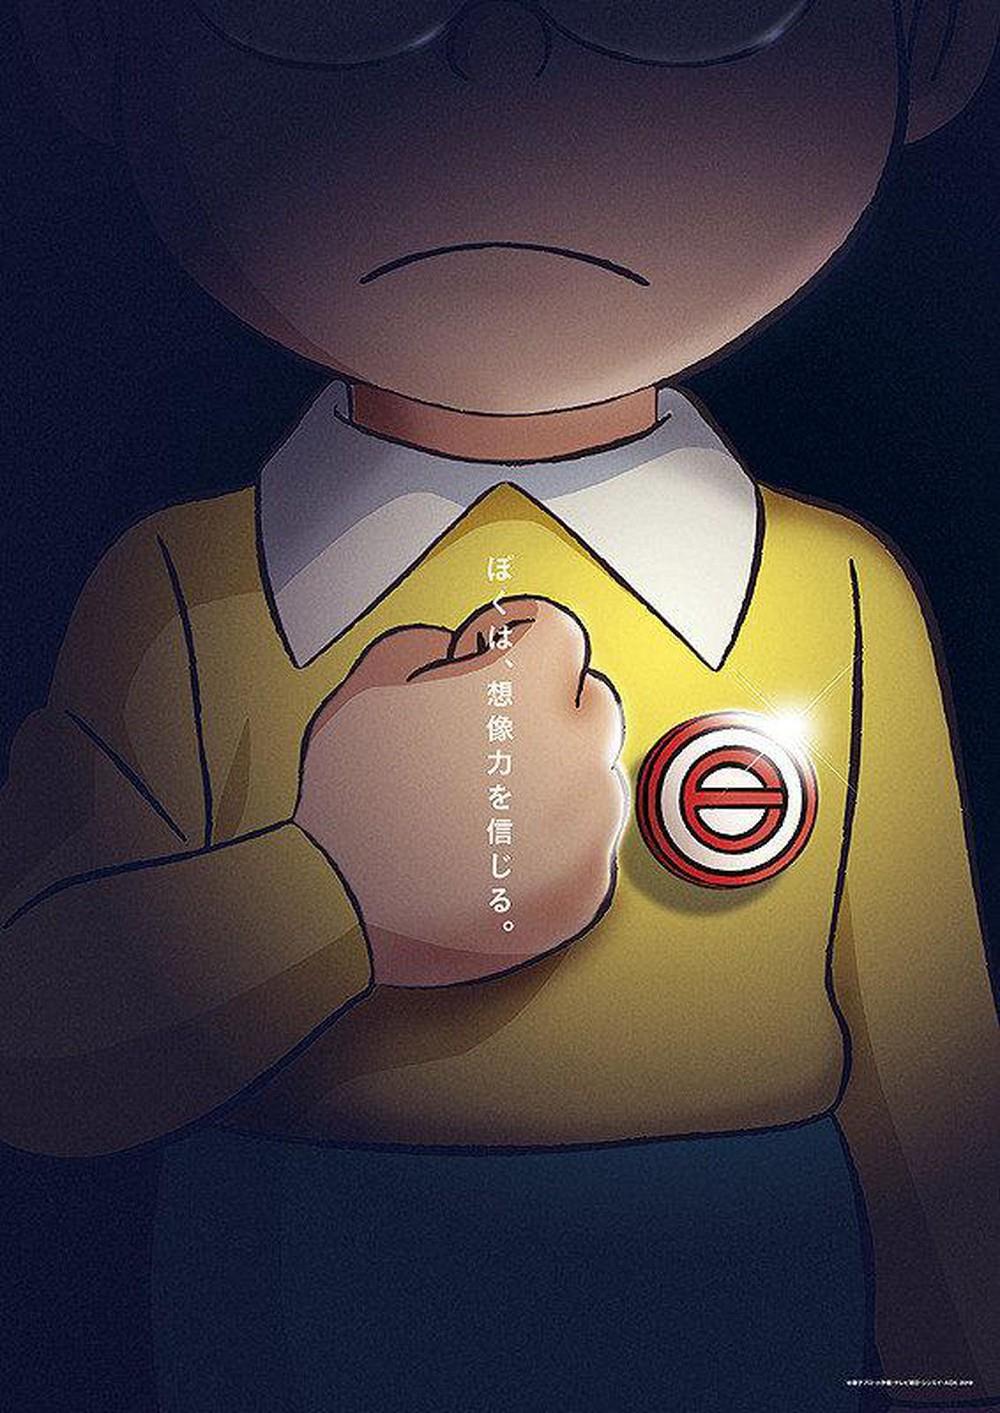 Chấn động giả thuyết: Nobita trong tương lai làm bá chủ thế giới ...